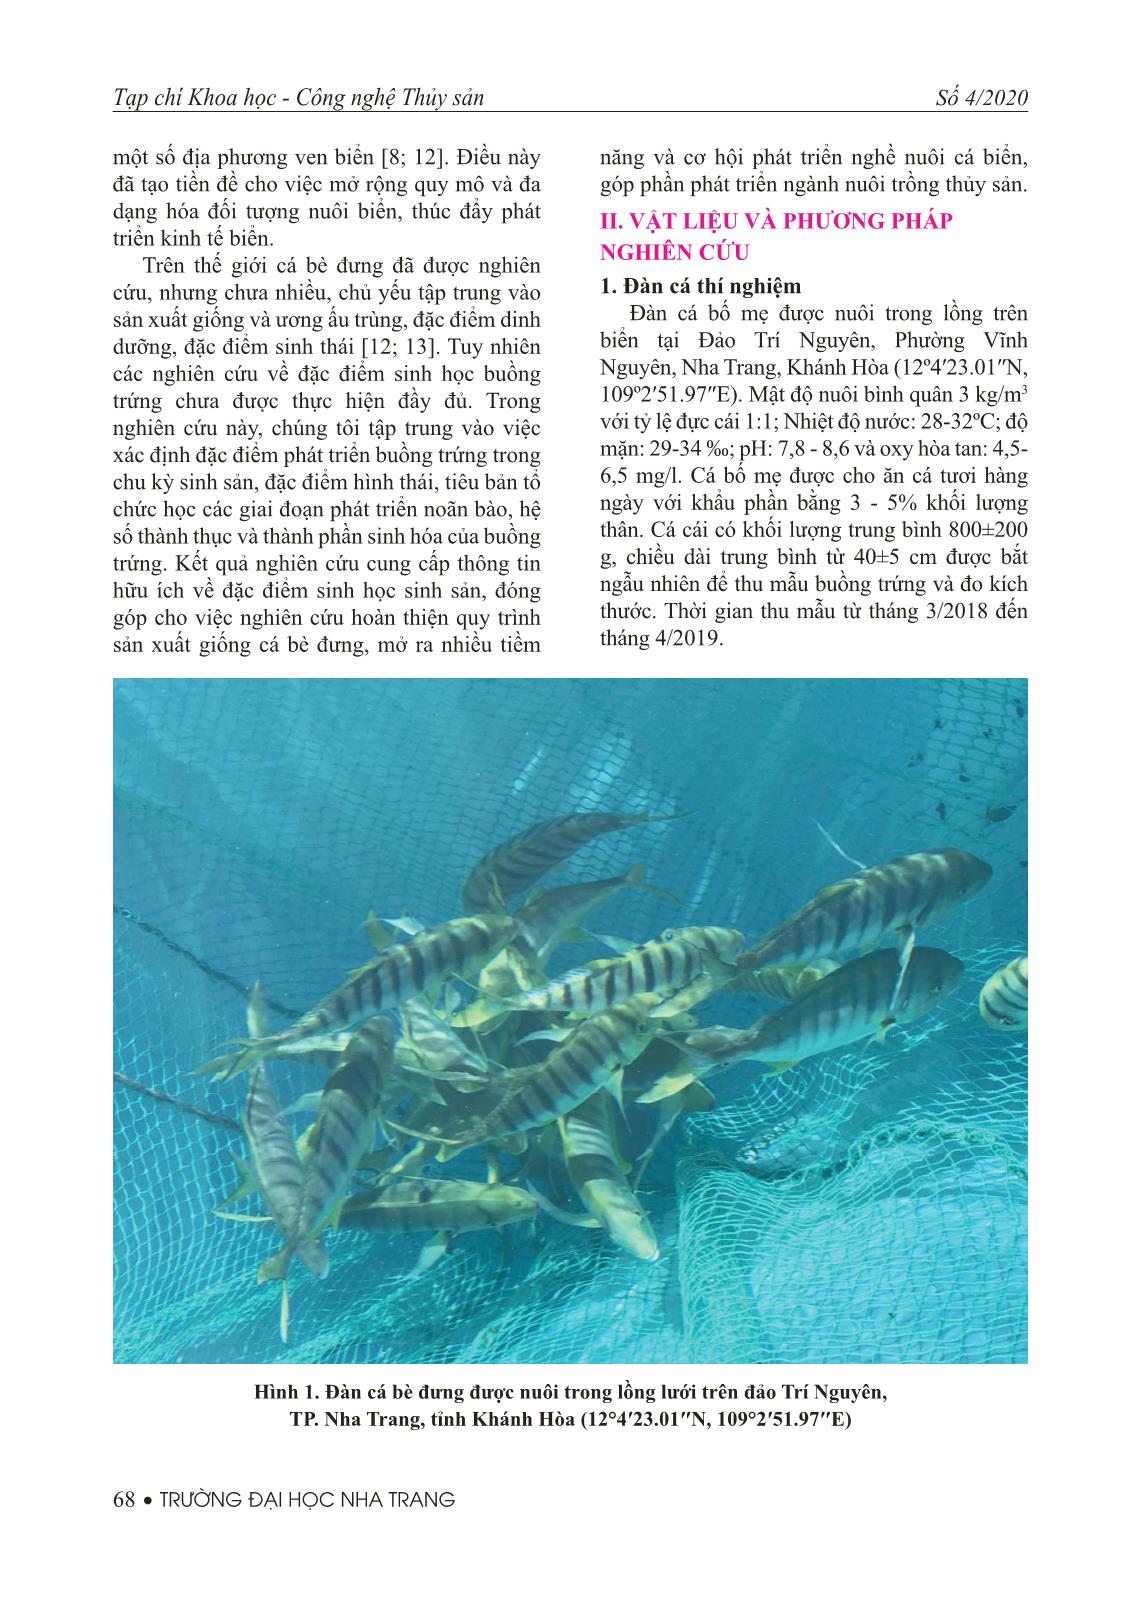 Nghiên cứu đặc điểm sinh học buồng trứng cá bè đưng (Gnathanodon speciosus) trang 2